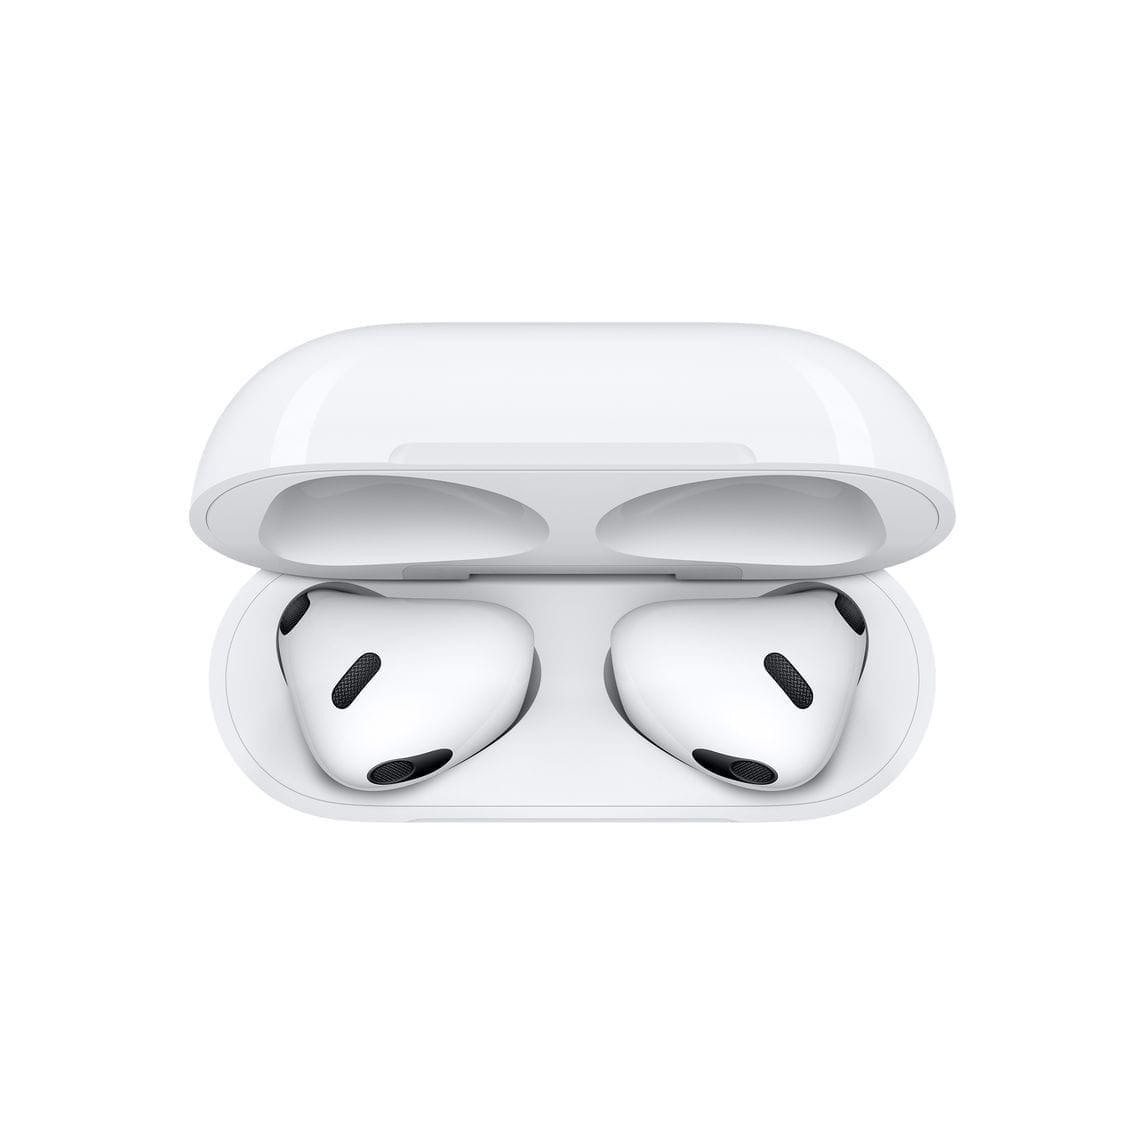 Apple в рамках своей презентации представила третье поколение наушников AirPods с новым динамиком, более глубокими басами, поддержкой «пространственного аудио» и объёмного звука Dolby Atmos, но без активного шумоподавления.